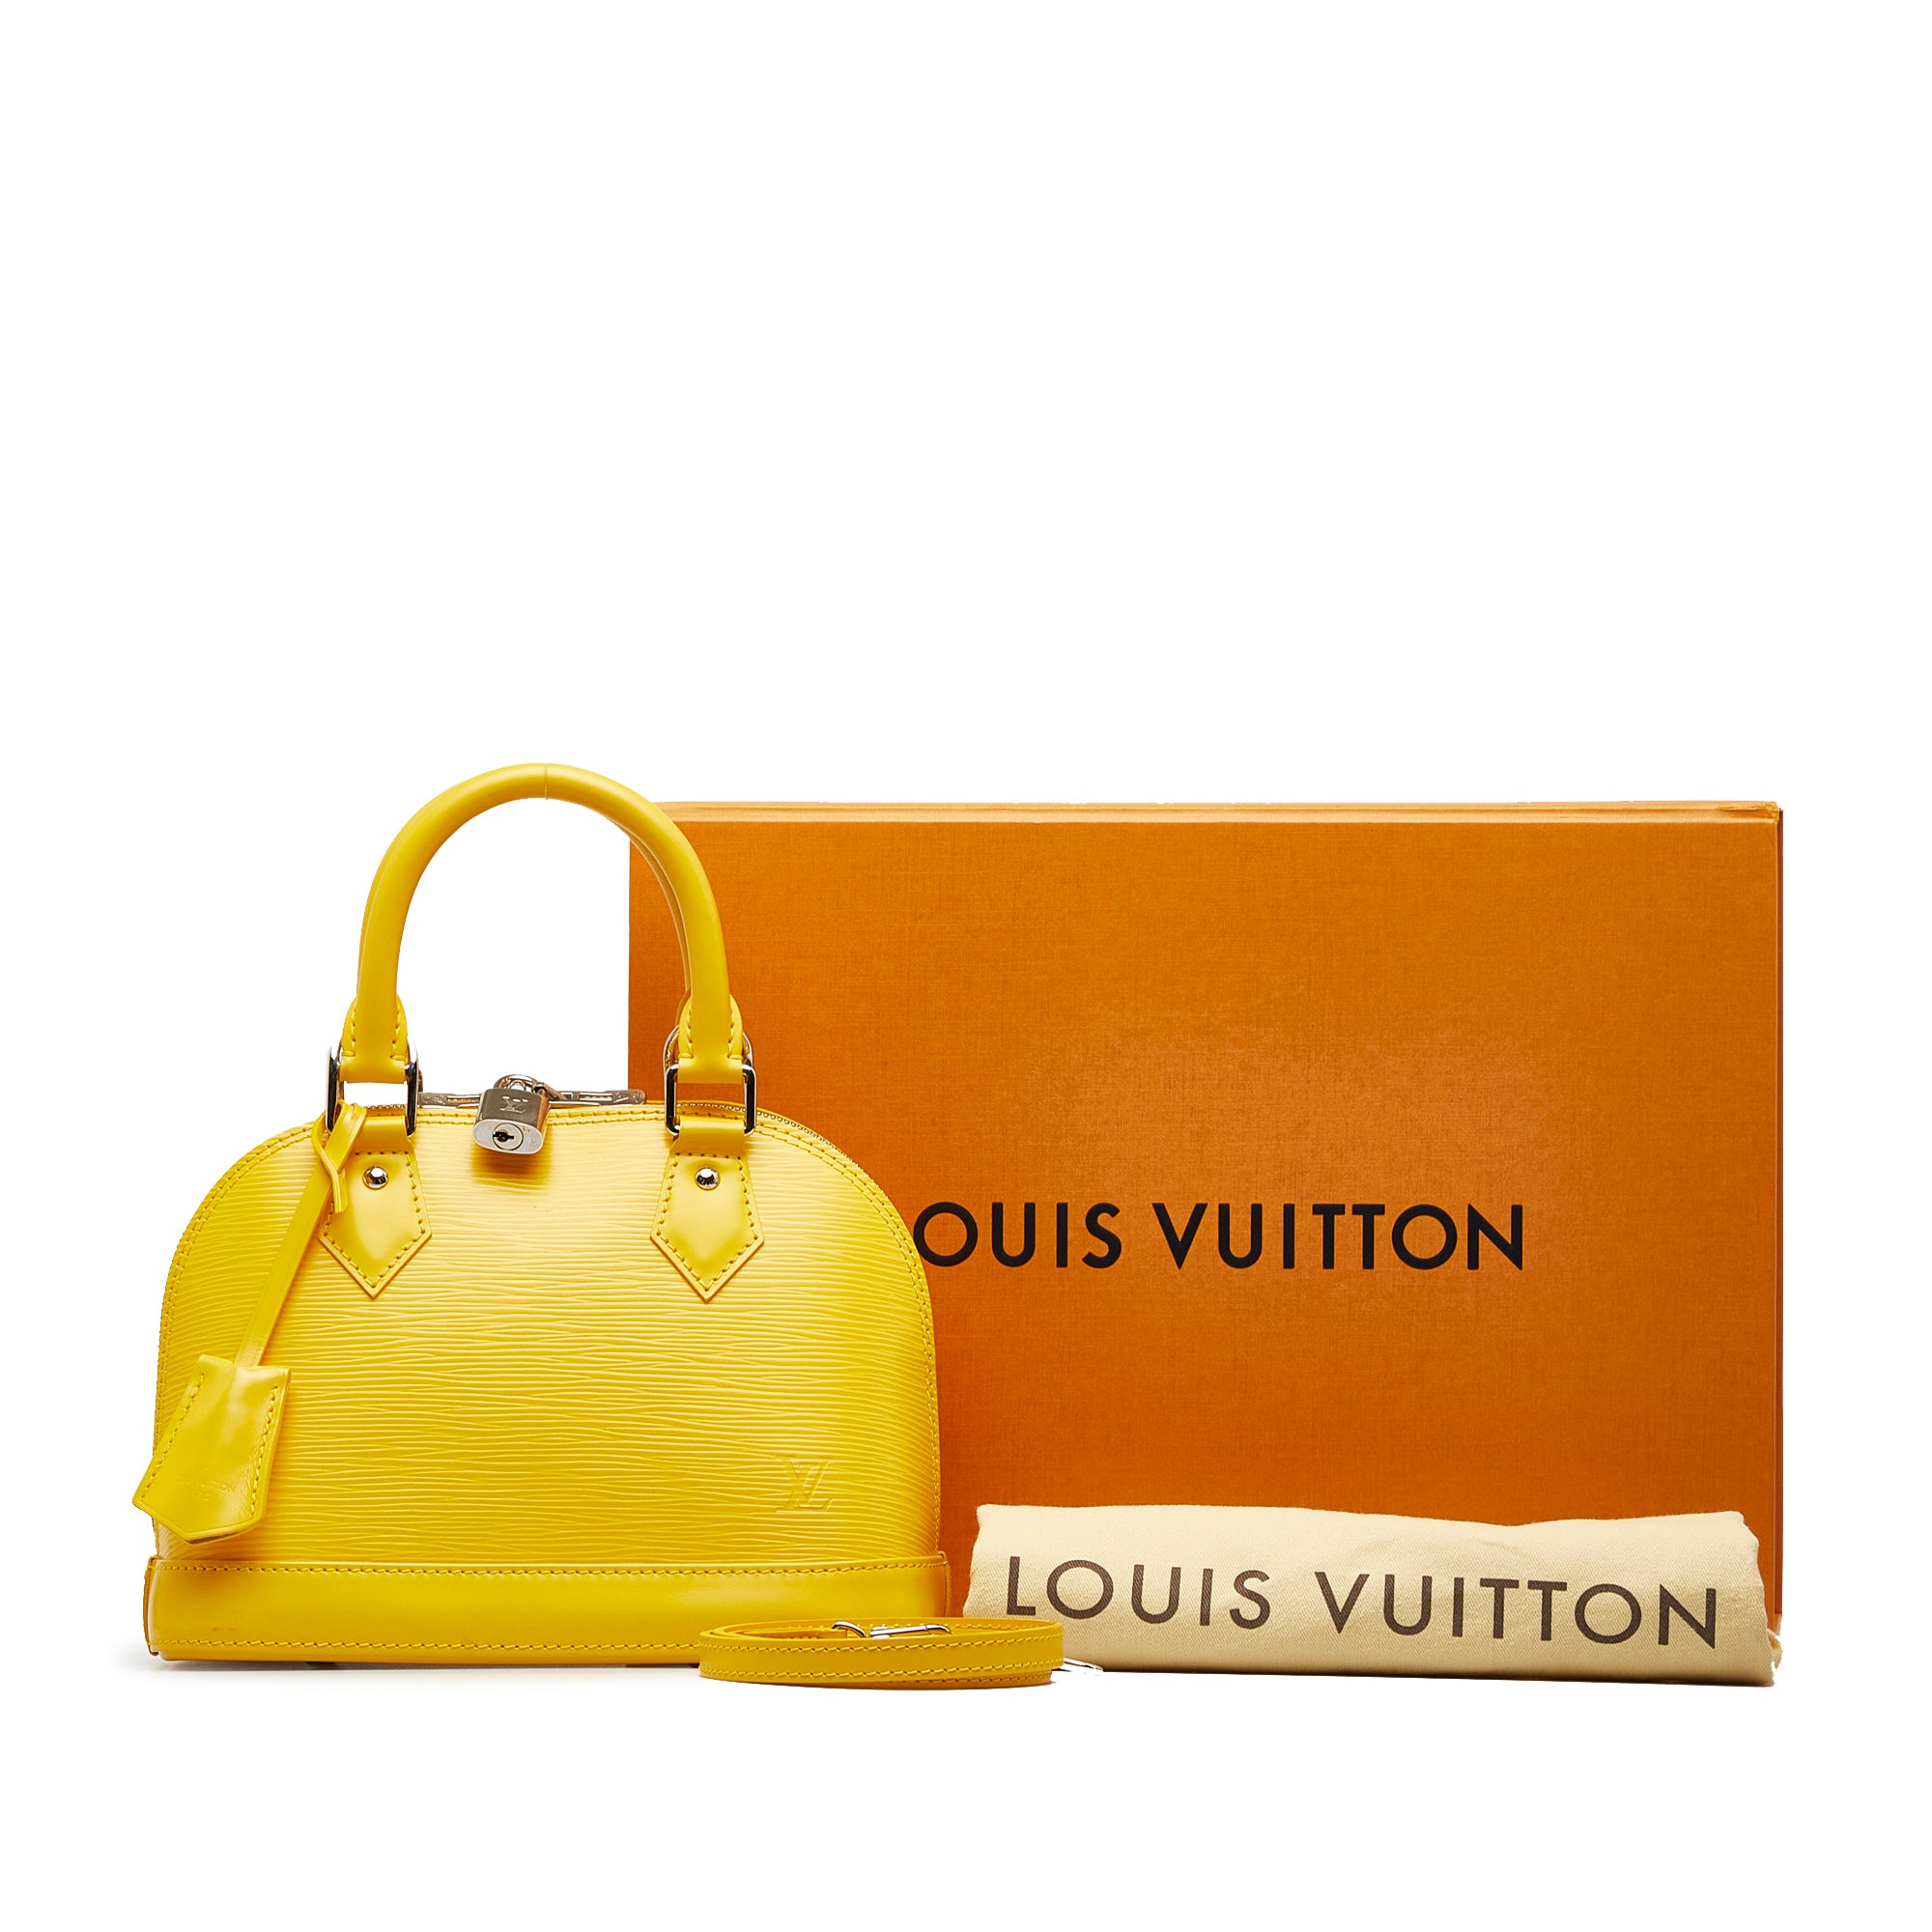 LOUIS VUITTON Bag Alma PM Citron Yellow Epi Leather